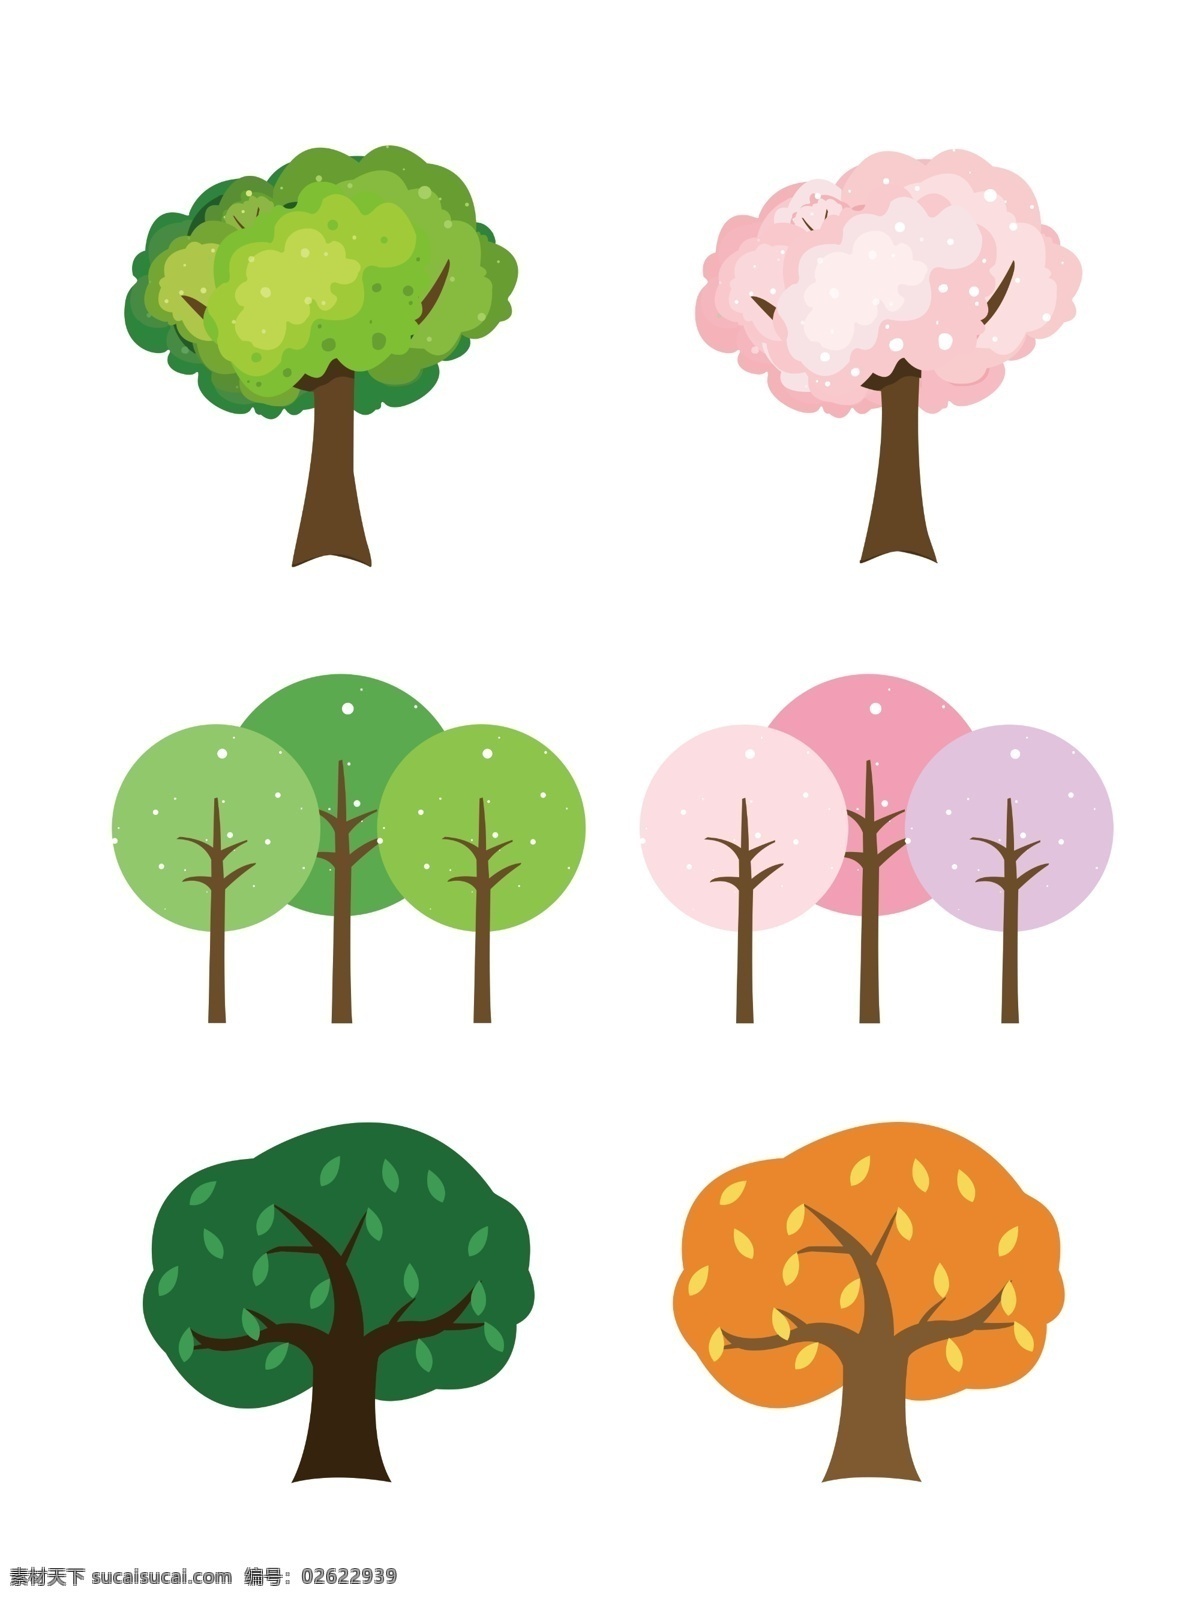 原创 手绘 植物 树 手绘植物 手绘树 卡通素材 卡通树 植物素材